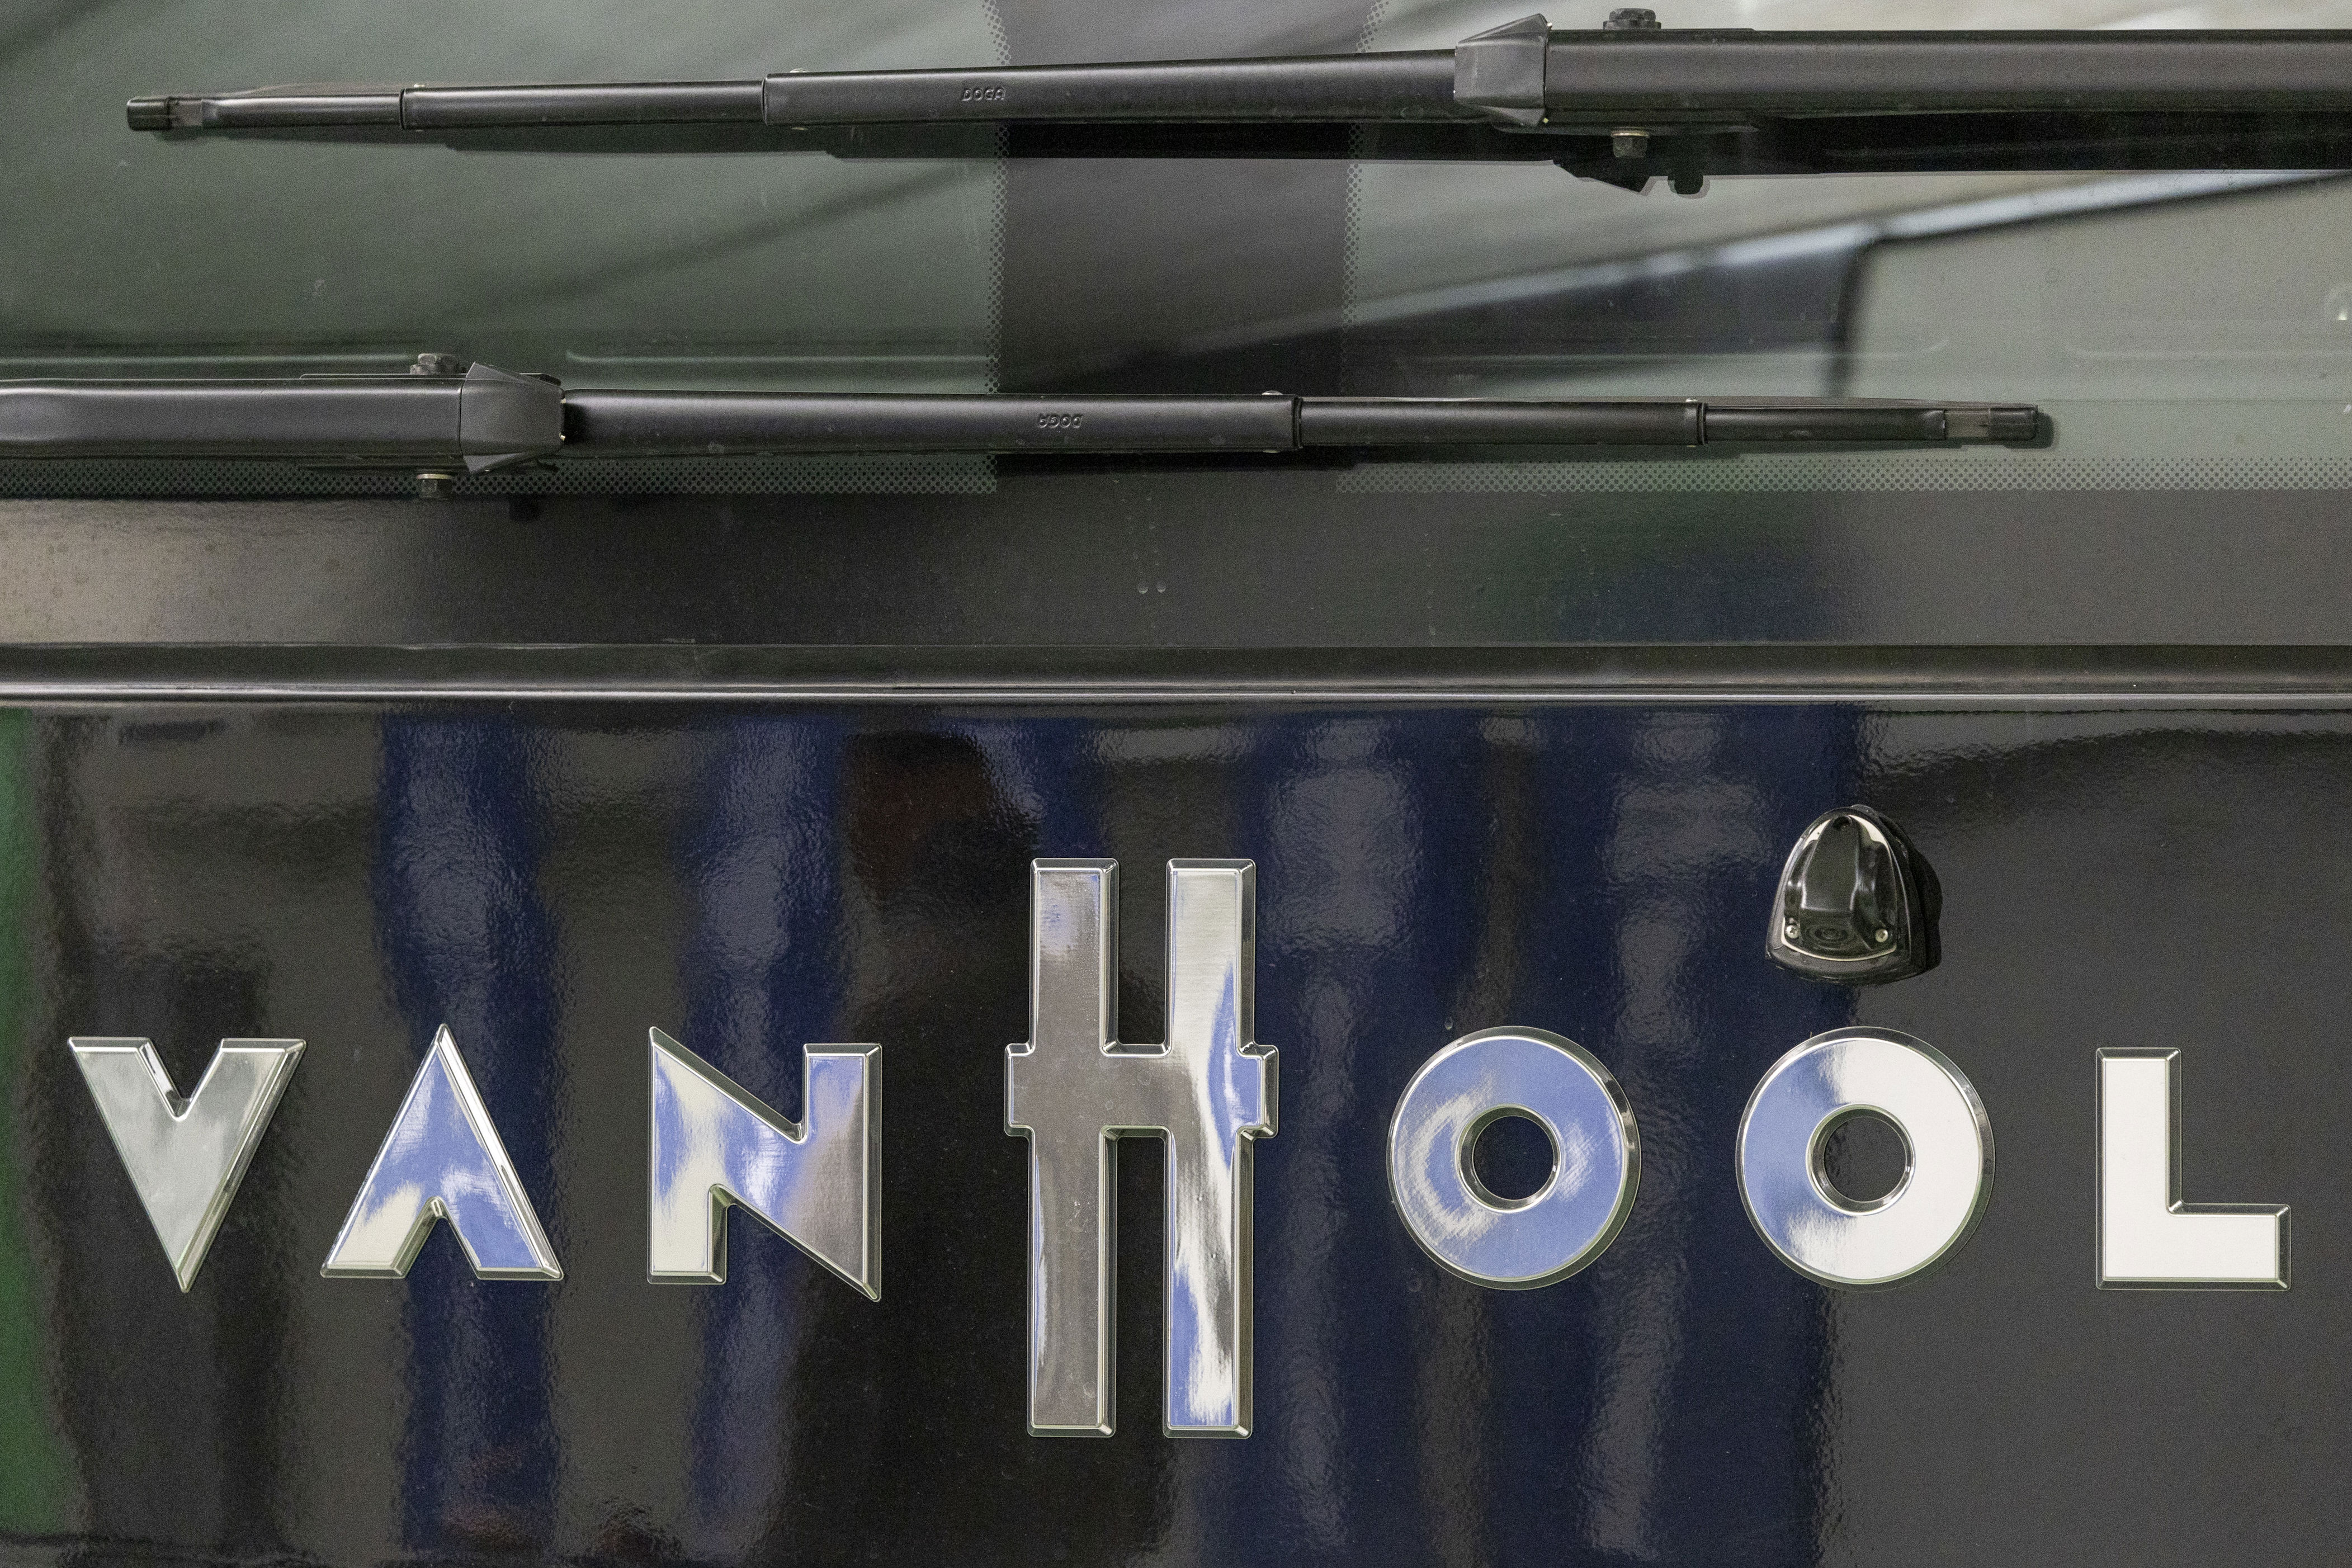 restructuration chez van hool - la fédération belge des autobus demande de la clarté sur la flotte de véhicules van hool